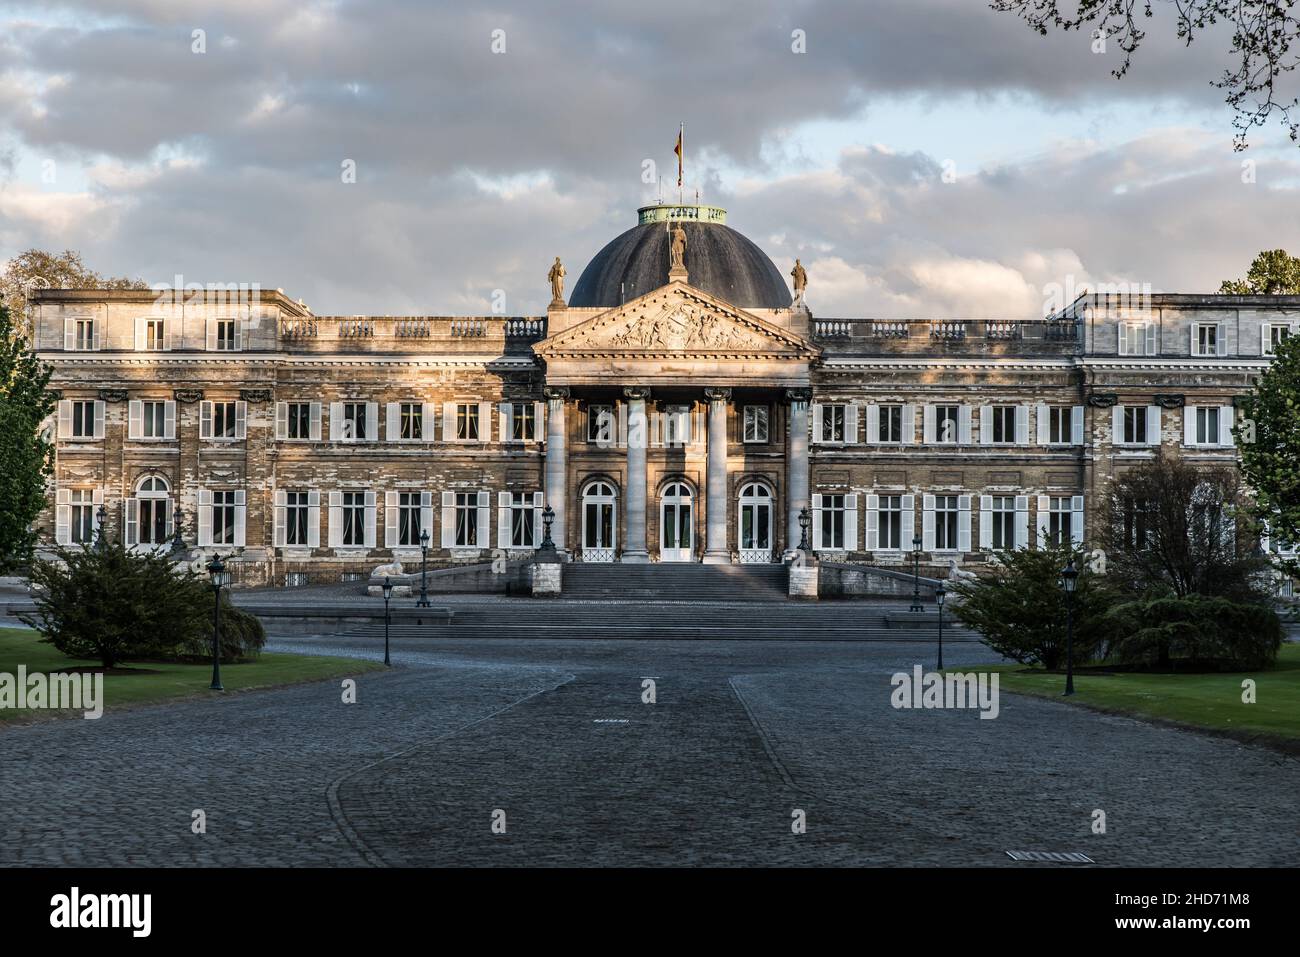 Palais royal résidentiel de la monarchie belge, Laeken, avril 2017, Bruxelles. Banque D'Images